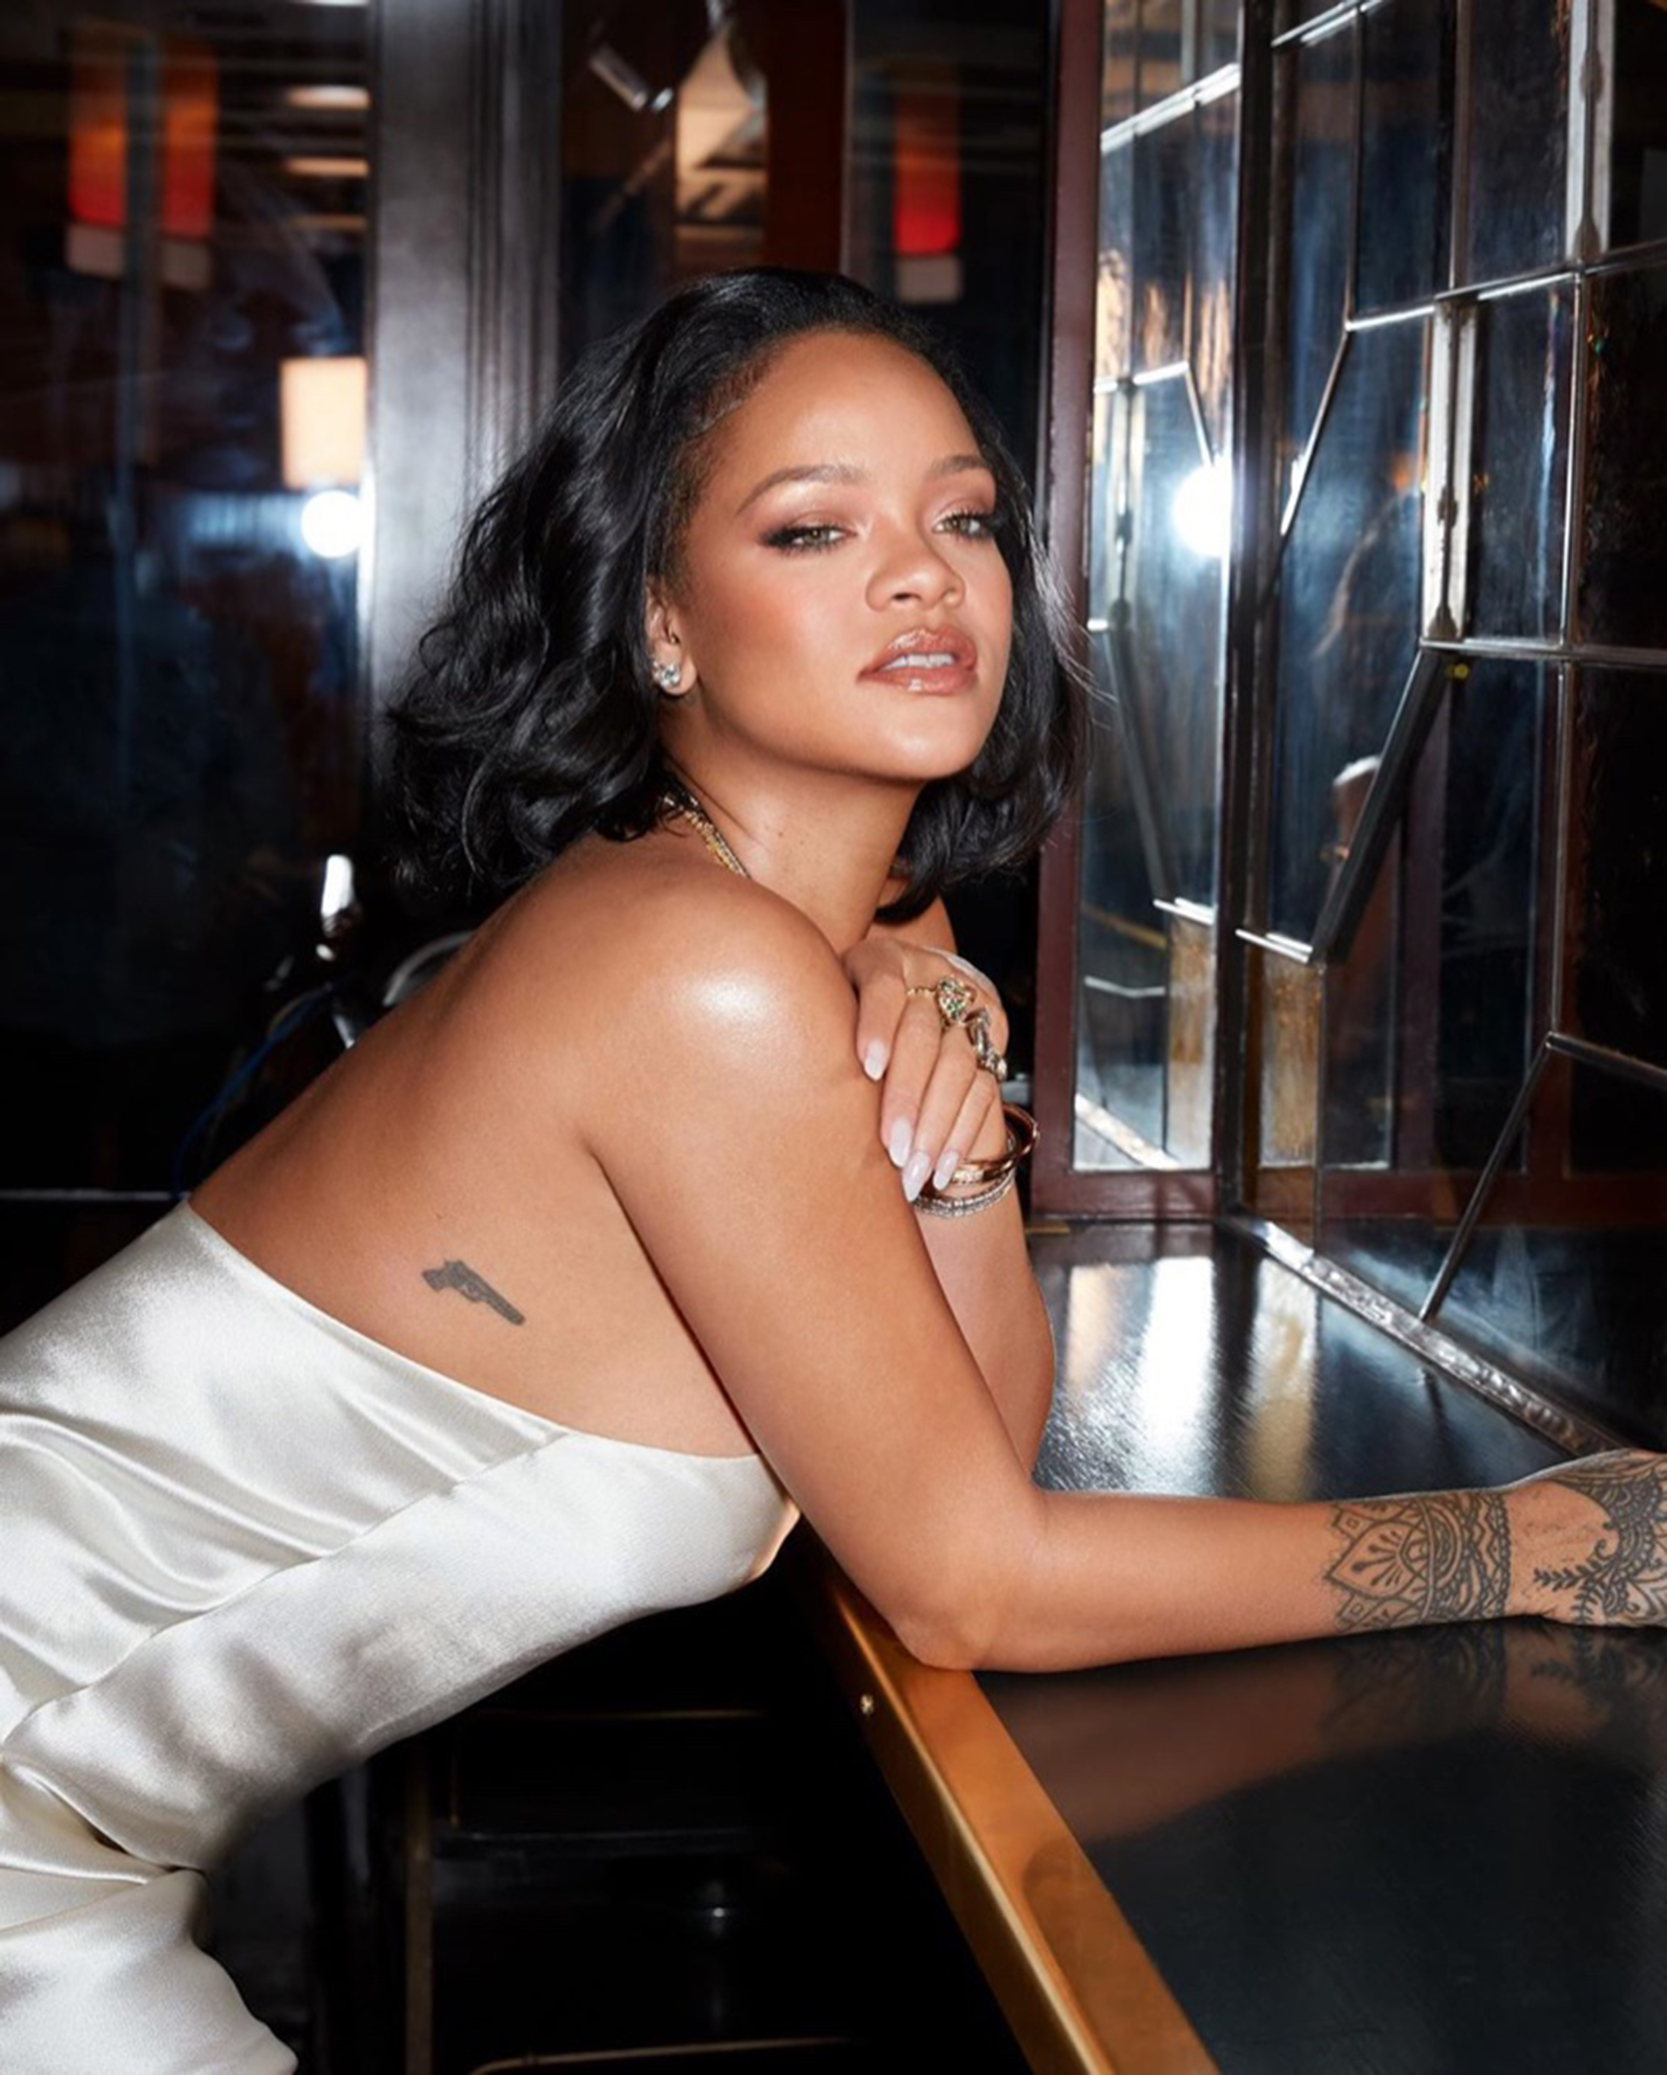 Rihanna, niște muzică mai lansăm și noi? Ce le-a răspuns artista celor care au întrebat-o despre un nou album